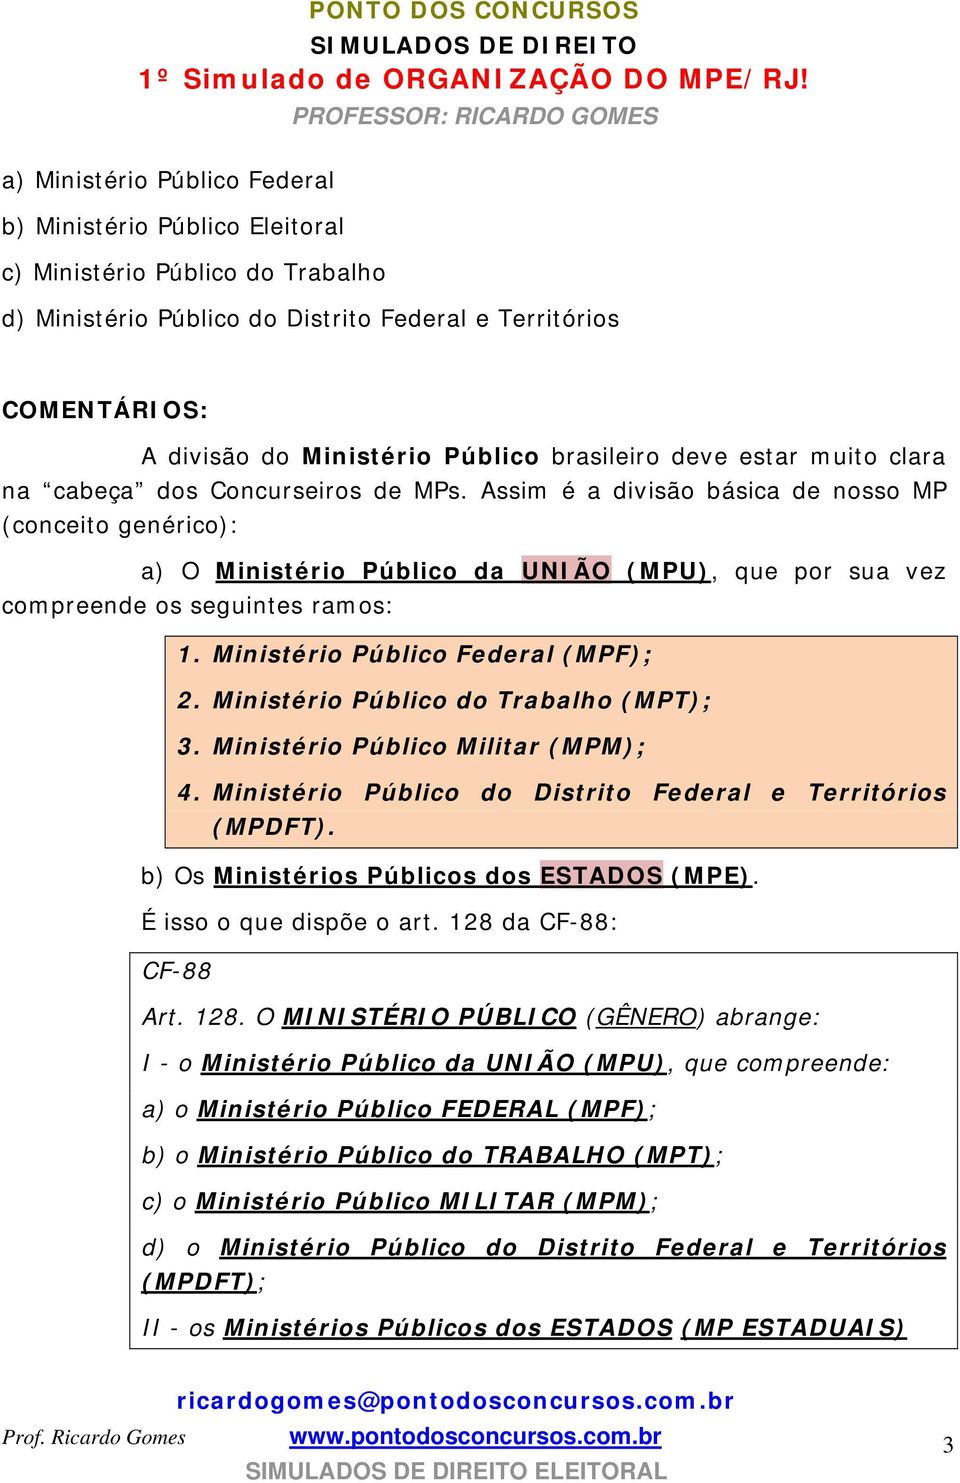 Ministério Público Federal (MPF); 2. Ministério Público do Trabalho (MPT); 3. Ministério Público Militar (MPM); 4. Ministério Público do Distrito Federal e Territórios (MPDFT).